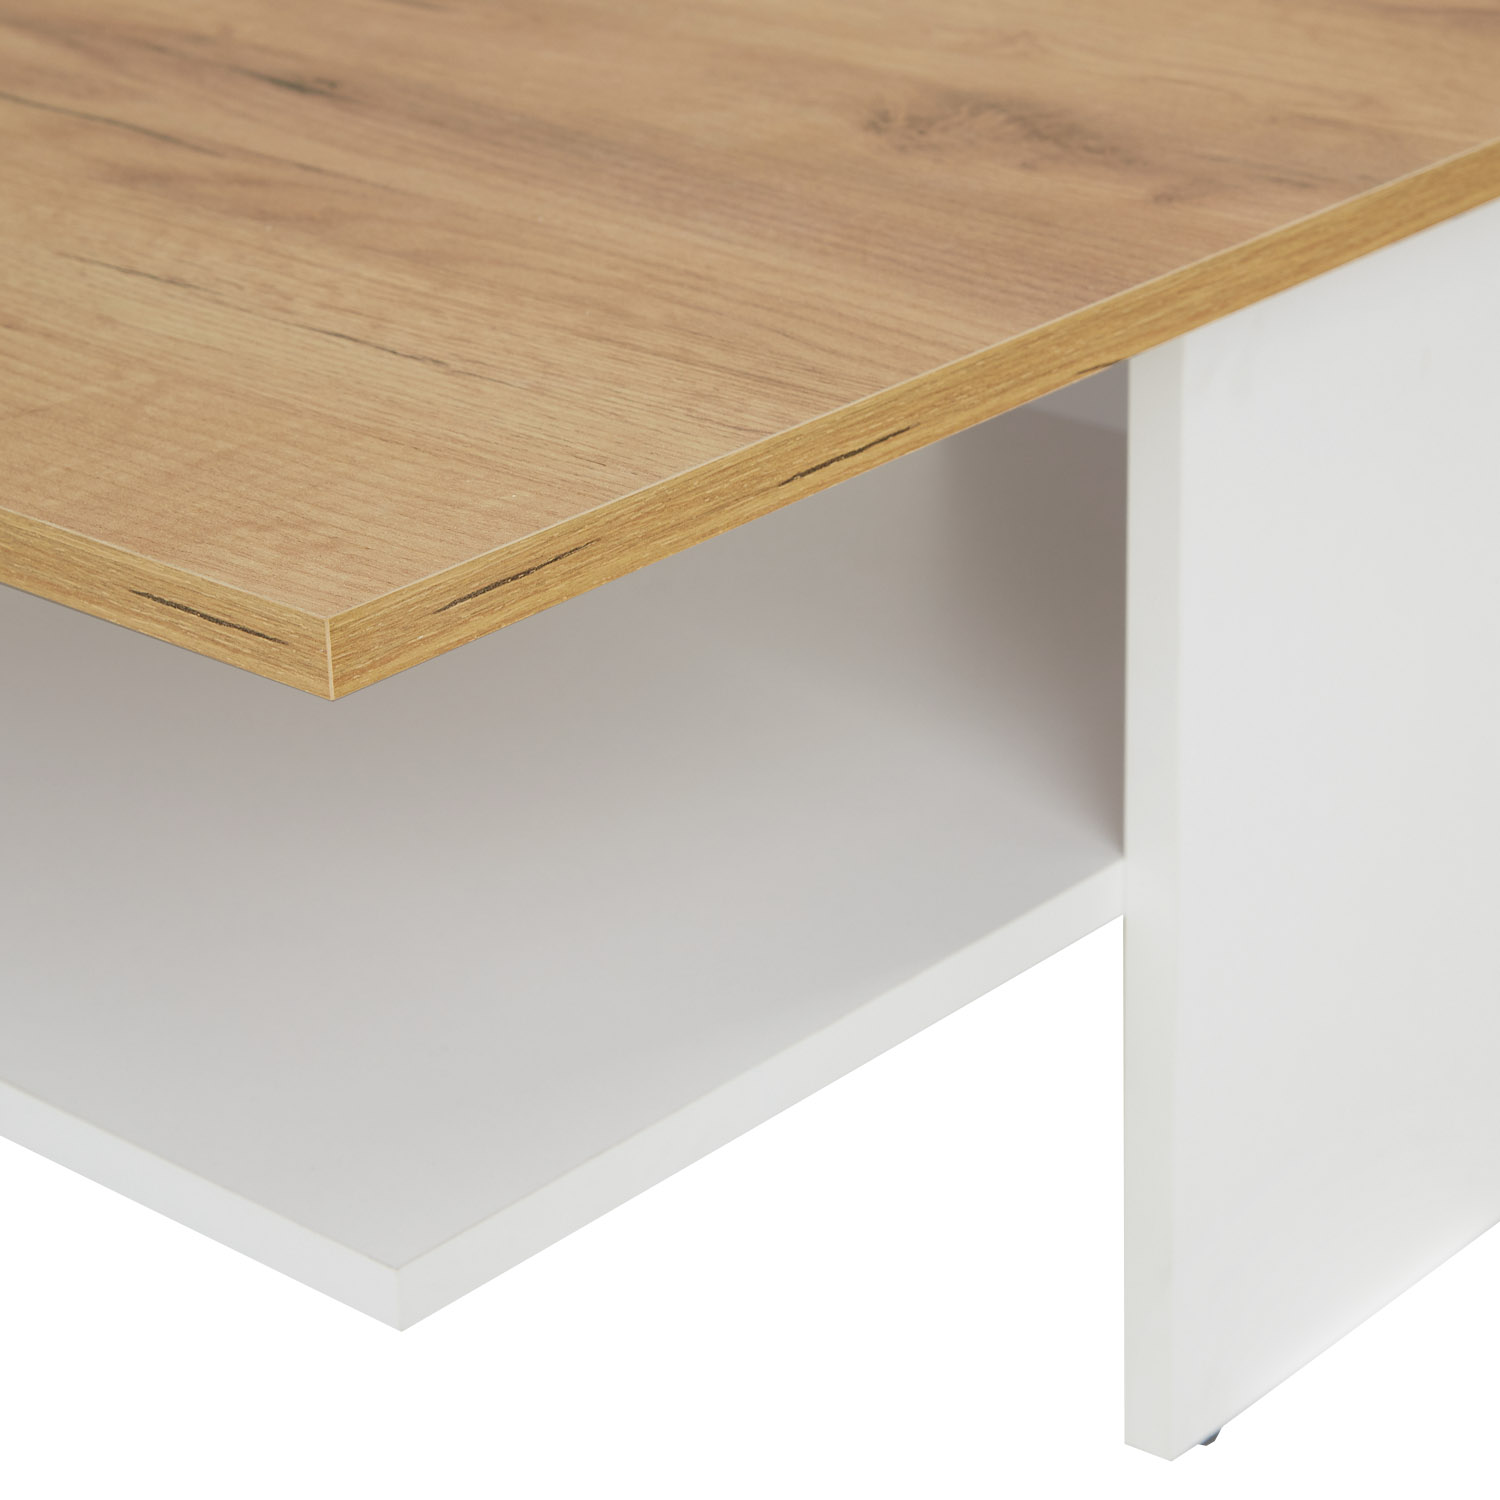 Wohnzimmertisch Couchtisch Holz Weiß Beton Optik Natur Sofatisch Holztisch Beistelltisch Modern